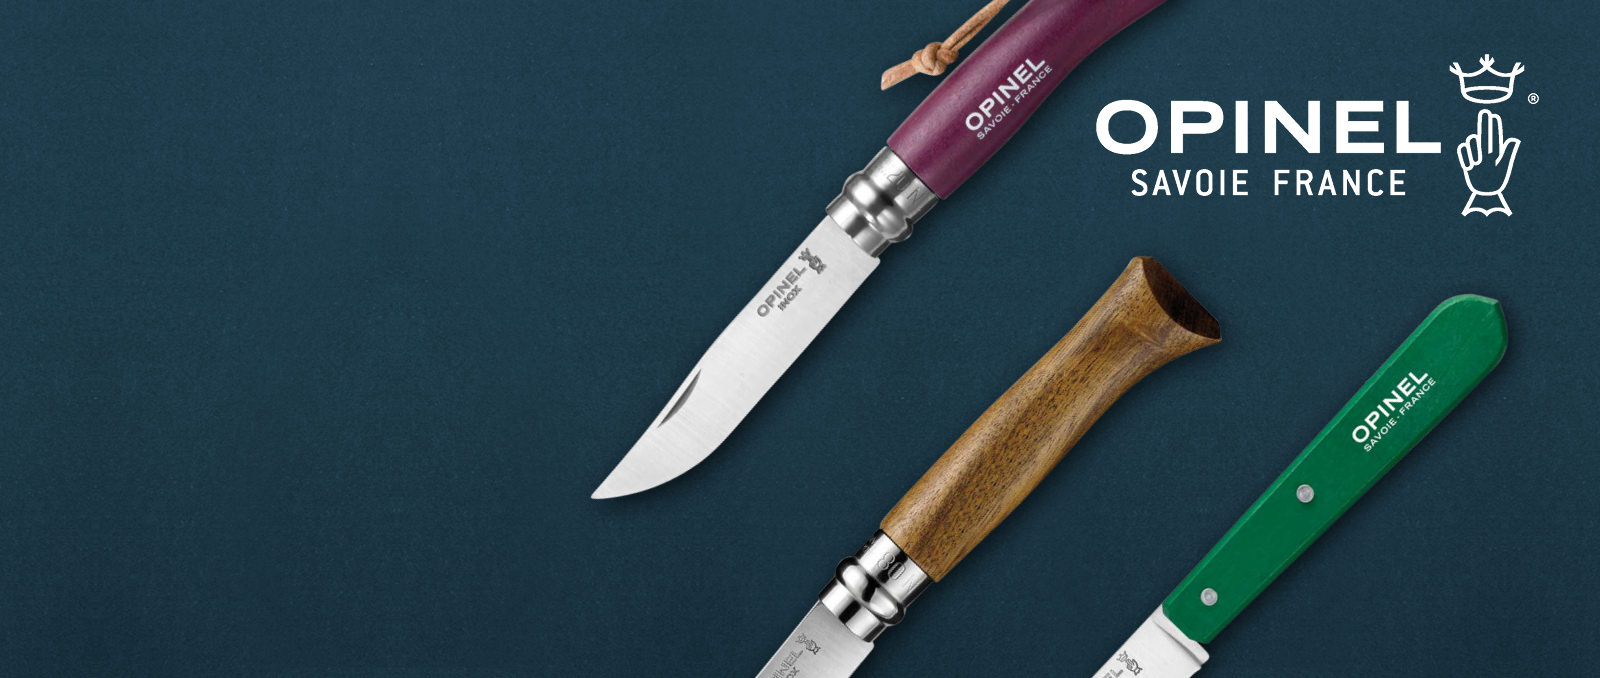 Programm Opinel - Schleiferei Balwinski - Opinel Messer kaufen